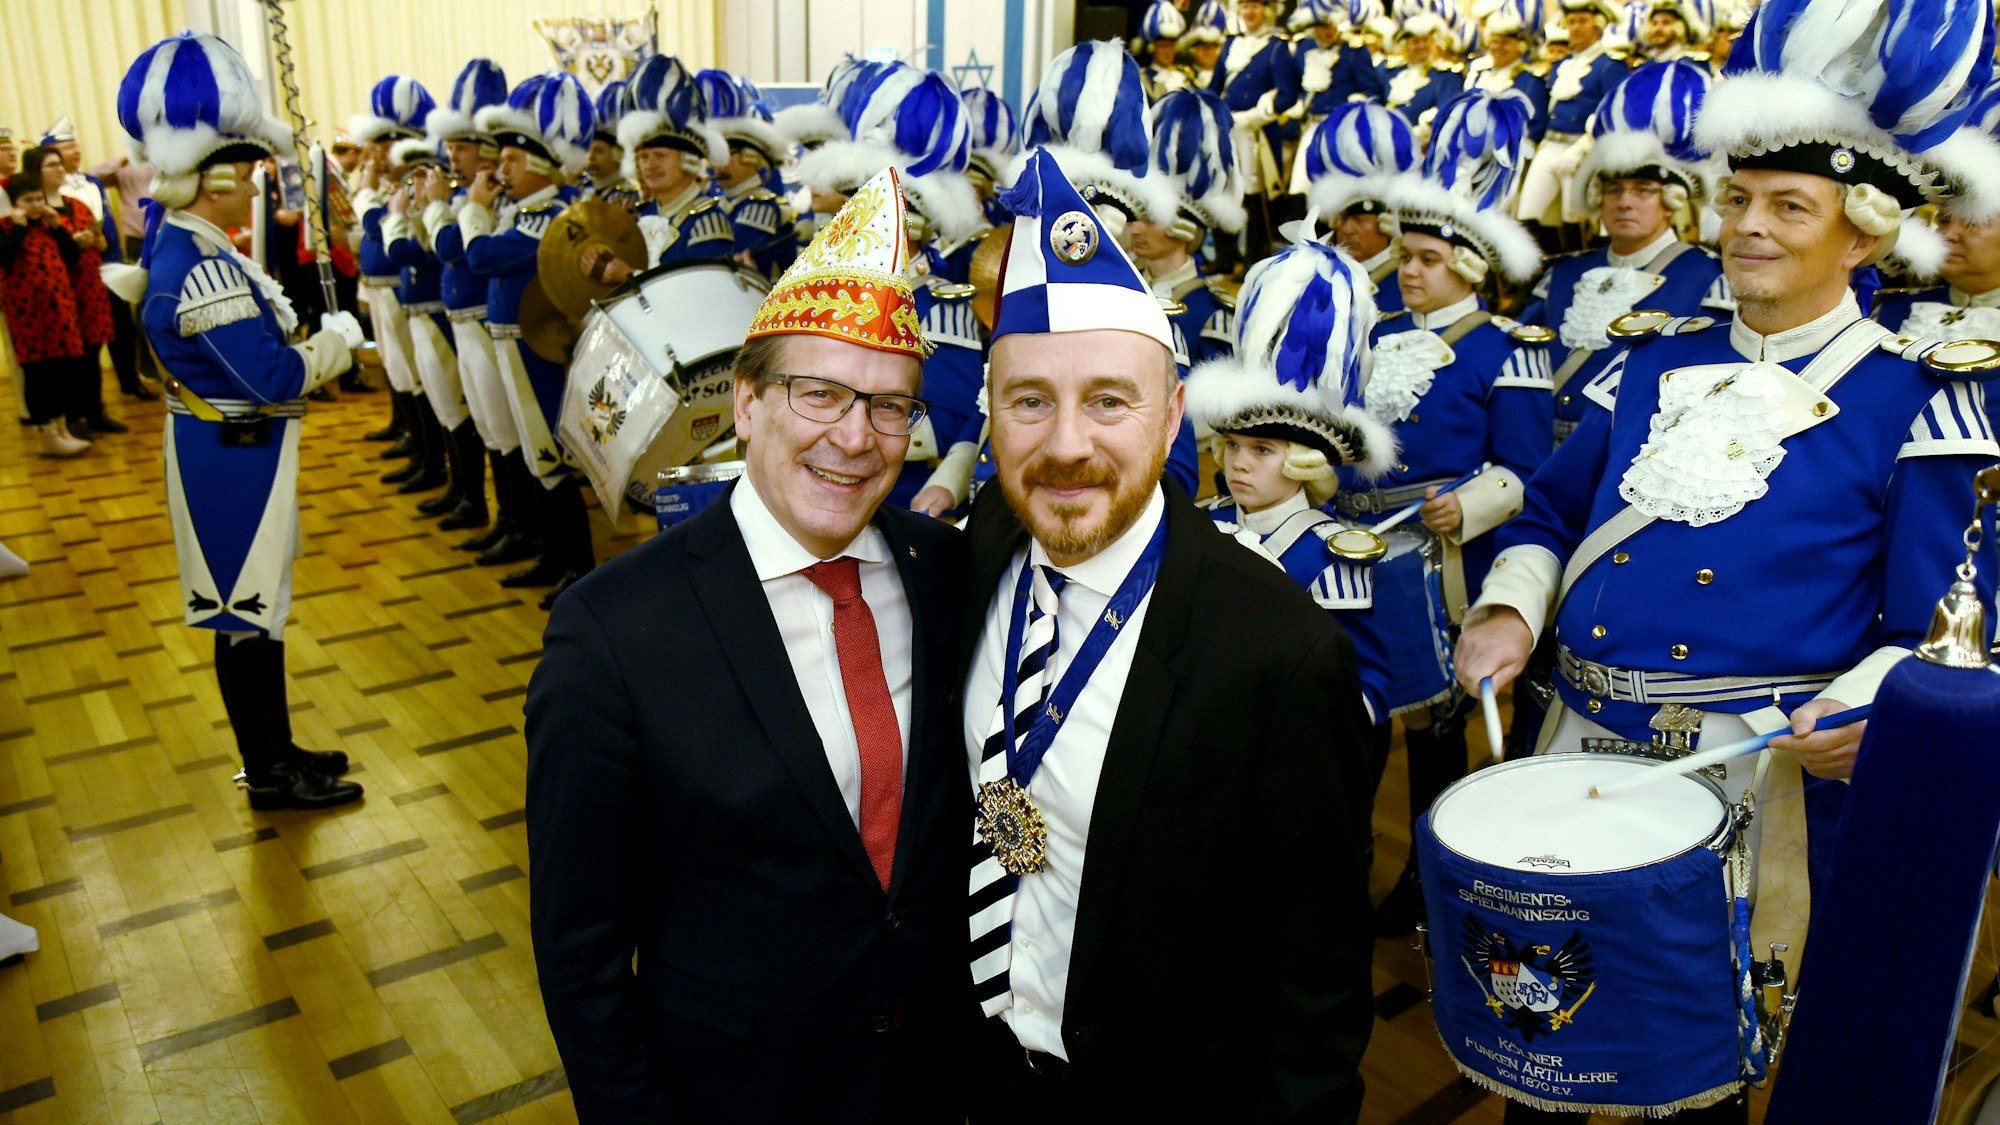 Festkomitee-Präsident Christoph Kuckelkorn mit Aaron Knappstein von den Kölschen Kippa Köpp in der Synagoge, im Hintergrund ein Trommlerkorps von Karnevaliste.